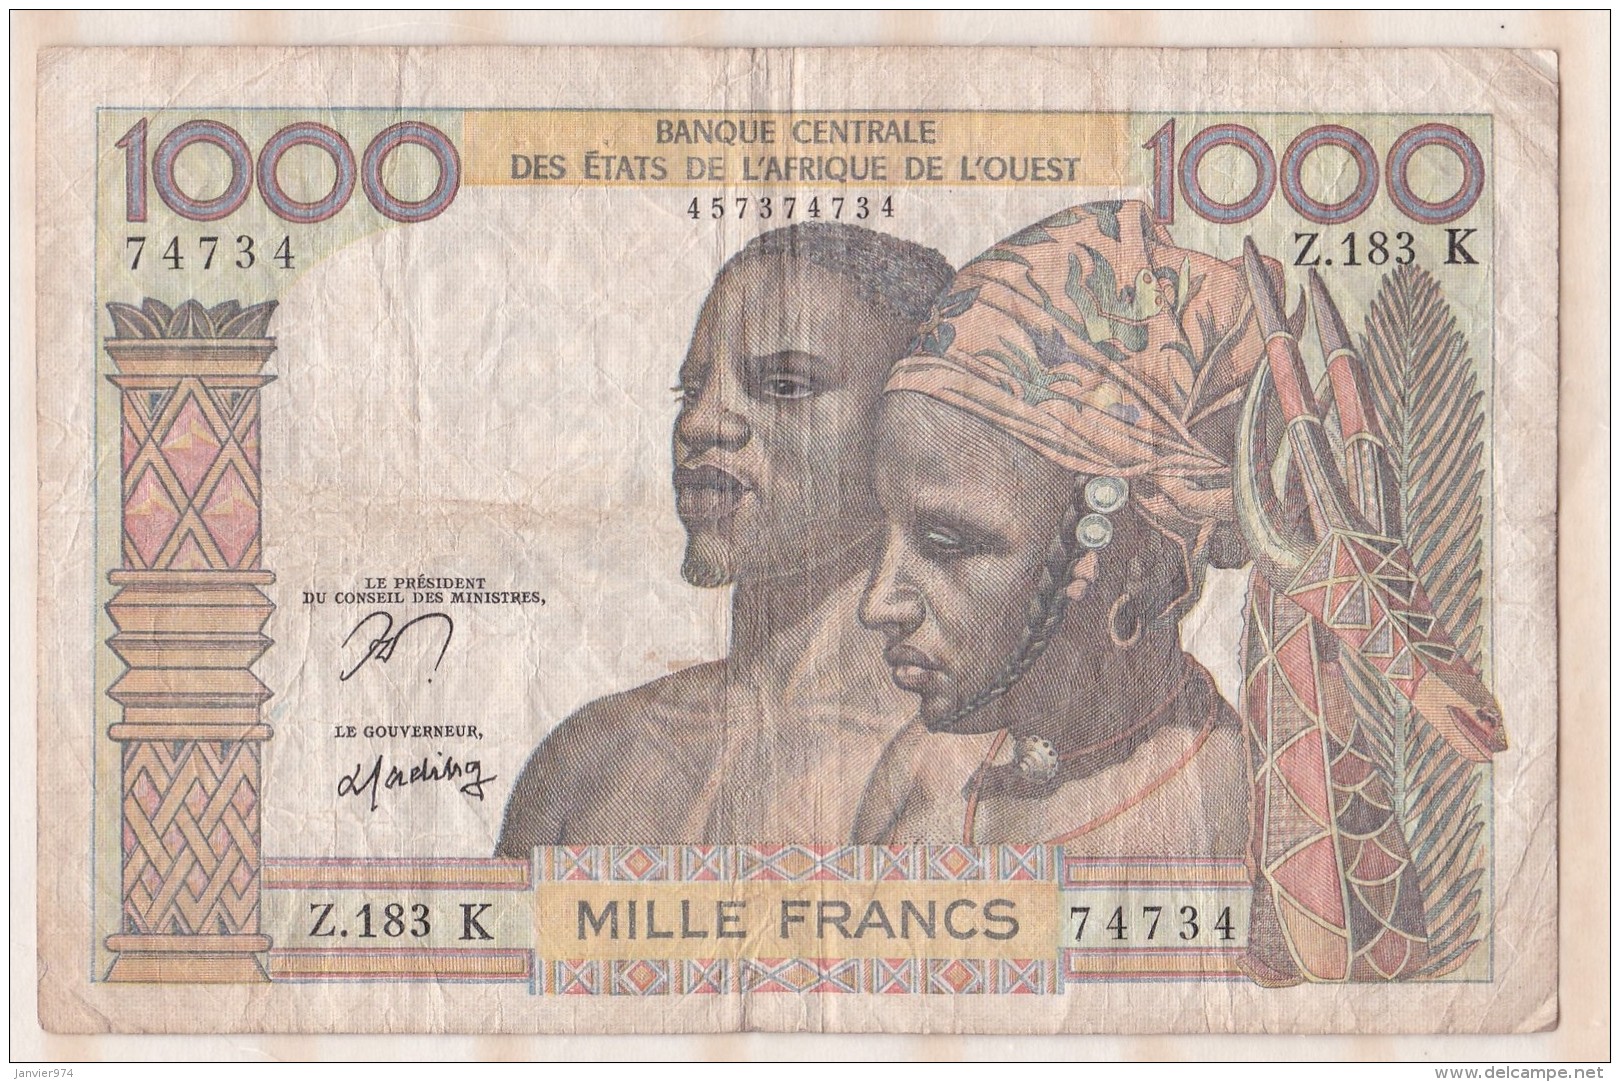 Billet BCEAO  1000 Francs  , Alphabet Z.183 K ,n° 74734 - Westafrikanischer Staaten